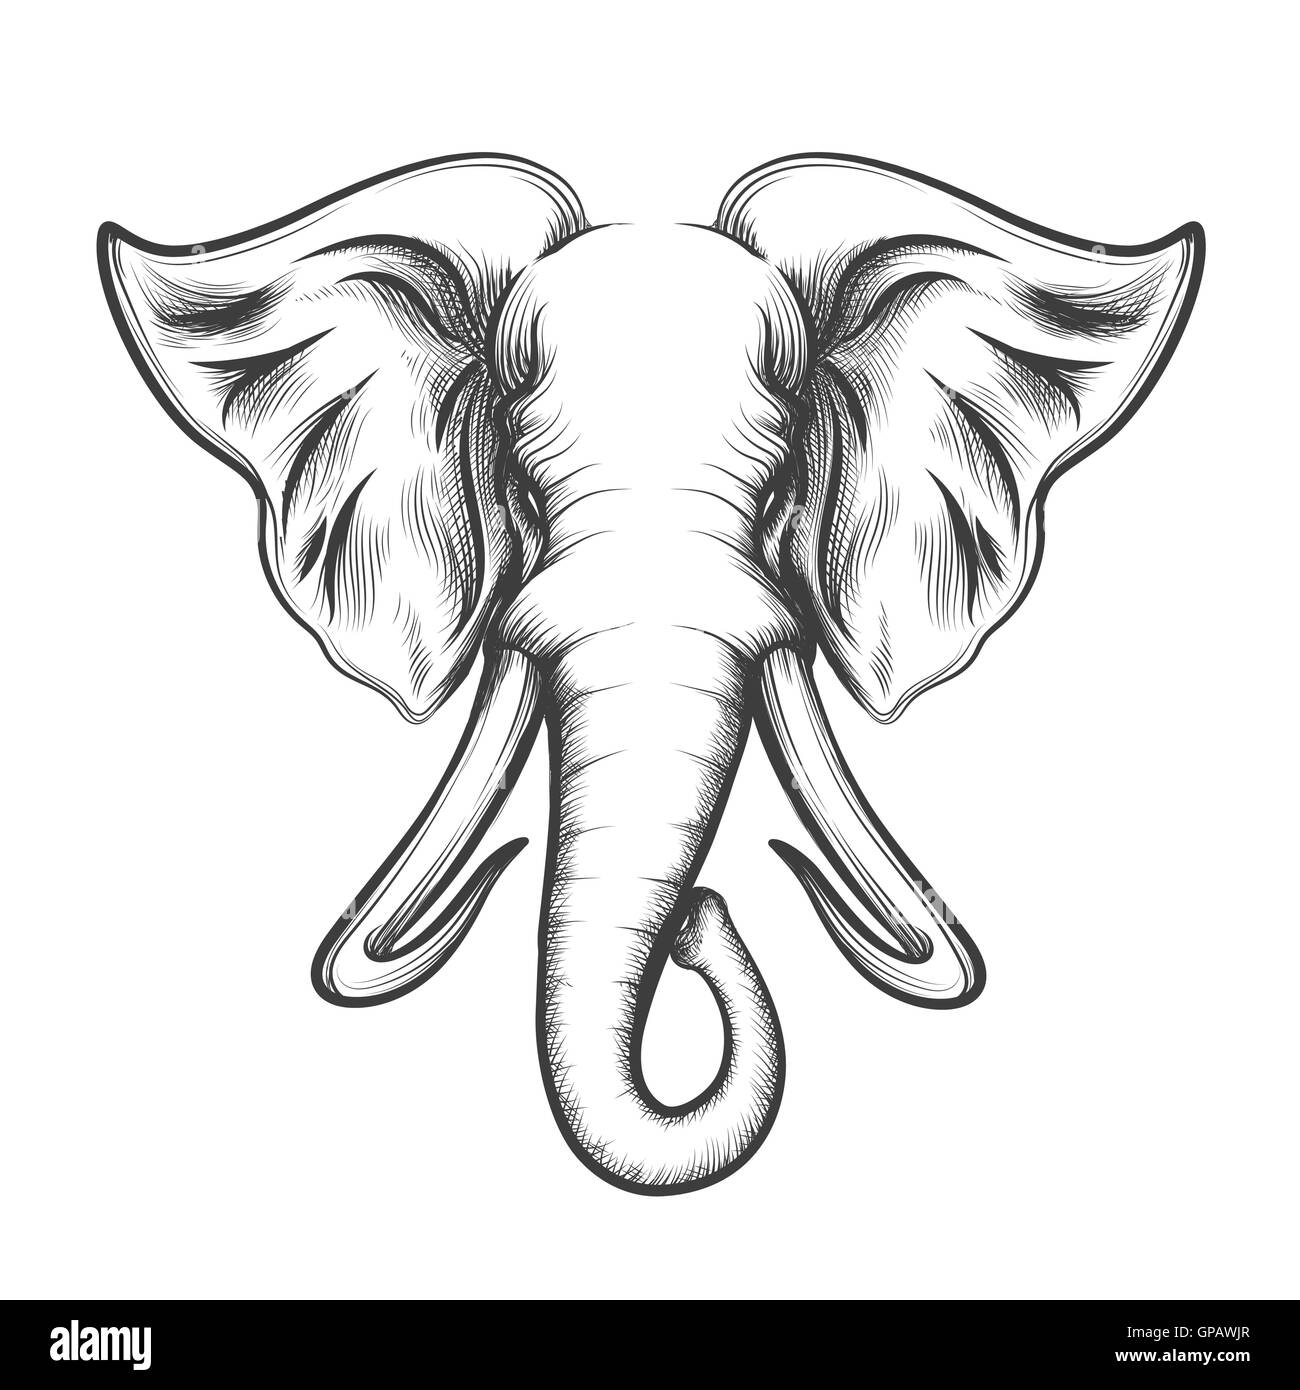 Tête d'éléphant dessiné en rétro style gravure isolé sur fond blanc. Vector illustration. Illustration de Vecteur